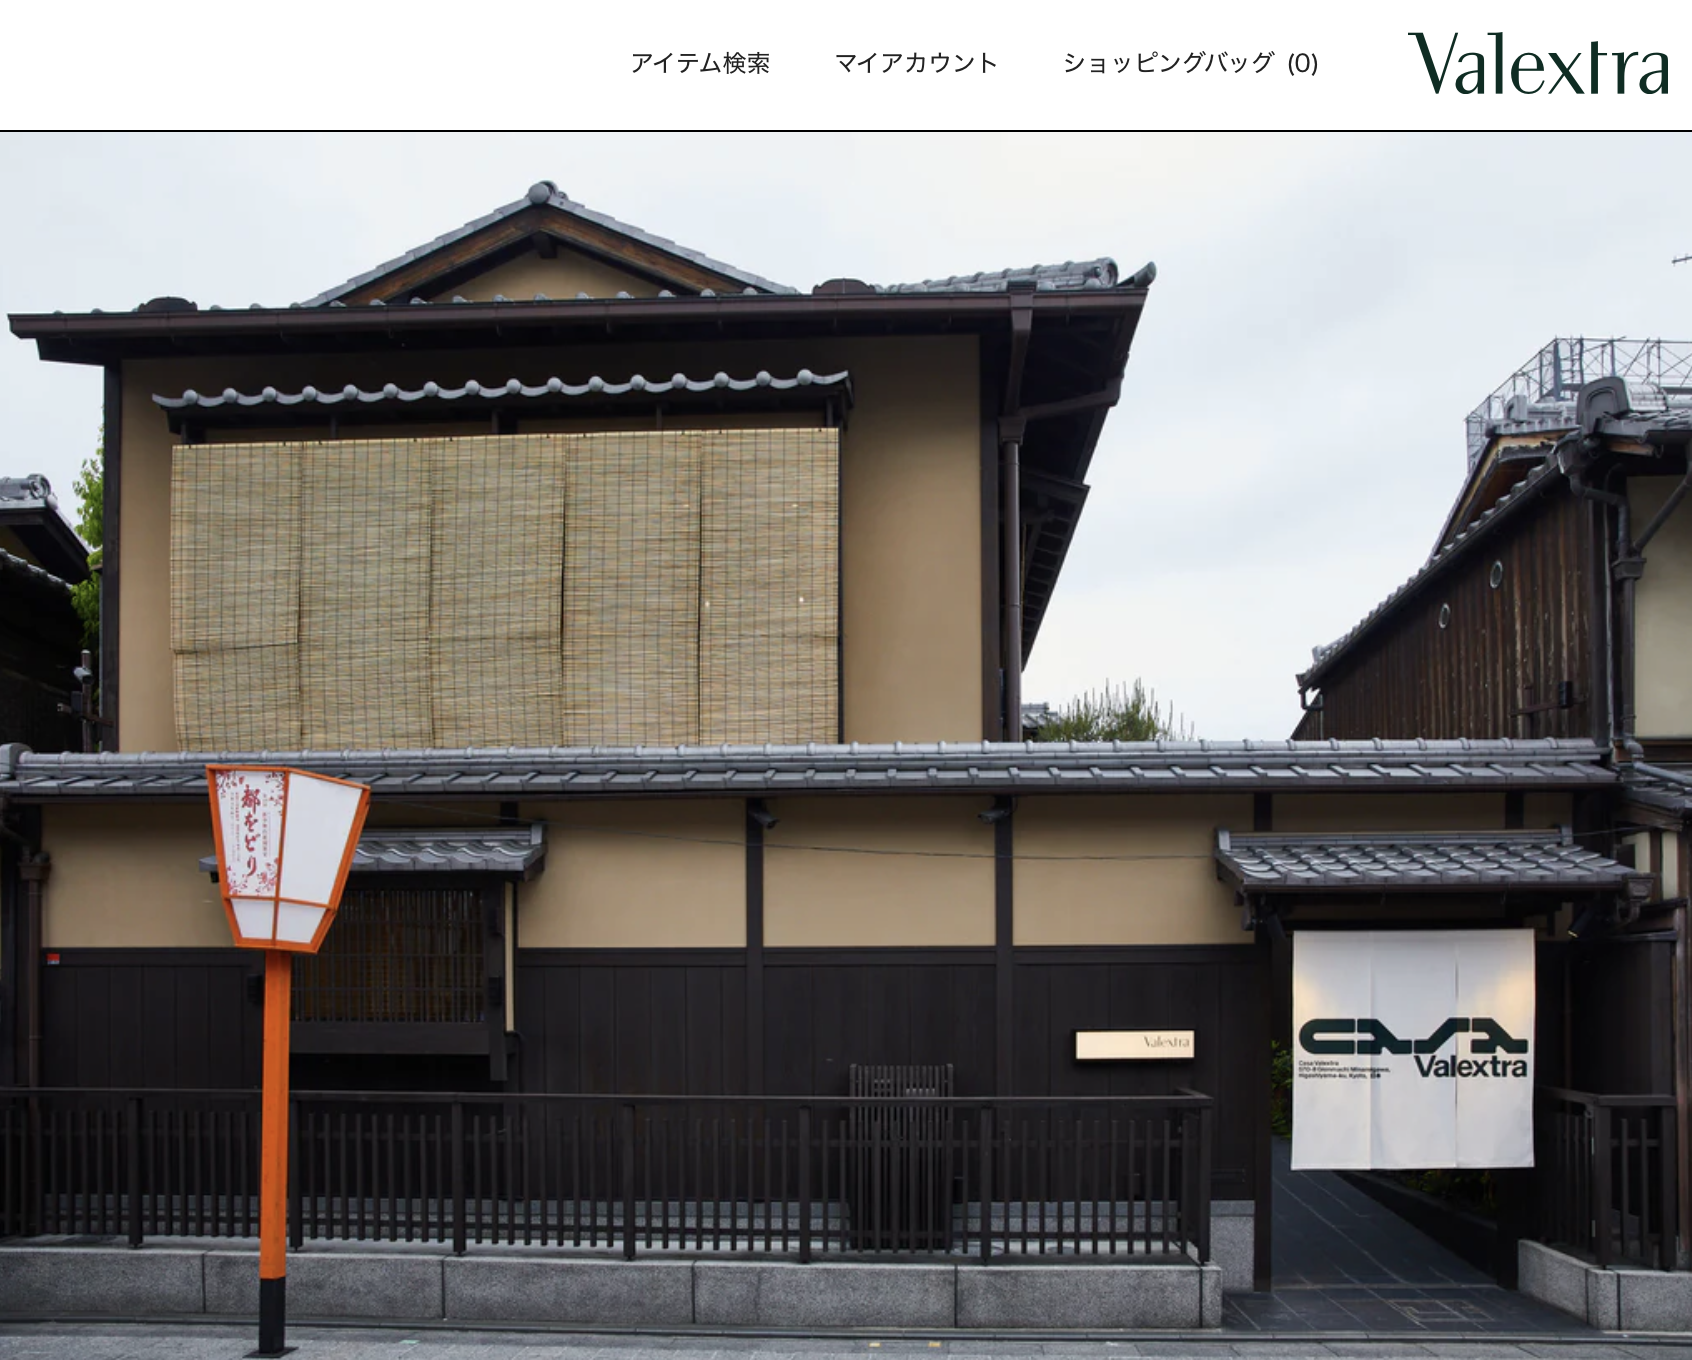 意大利奢侈皮具品牌 Valextra 在日本开设全新沉浸式体验空间，开拓生活方式品类